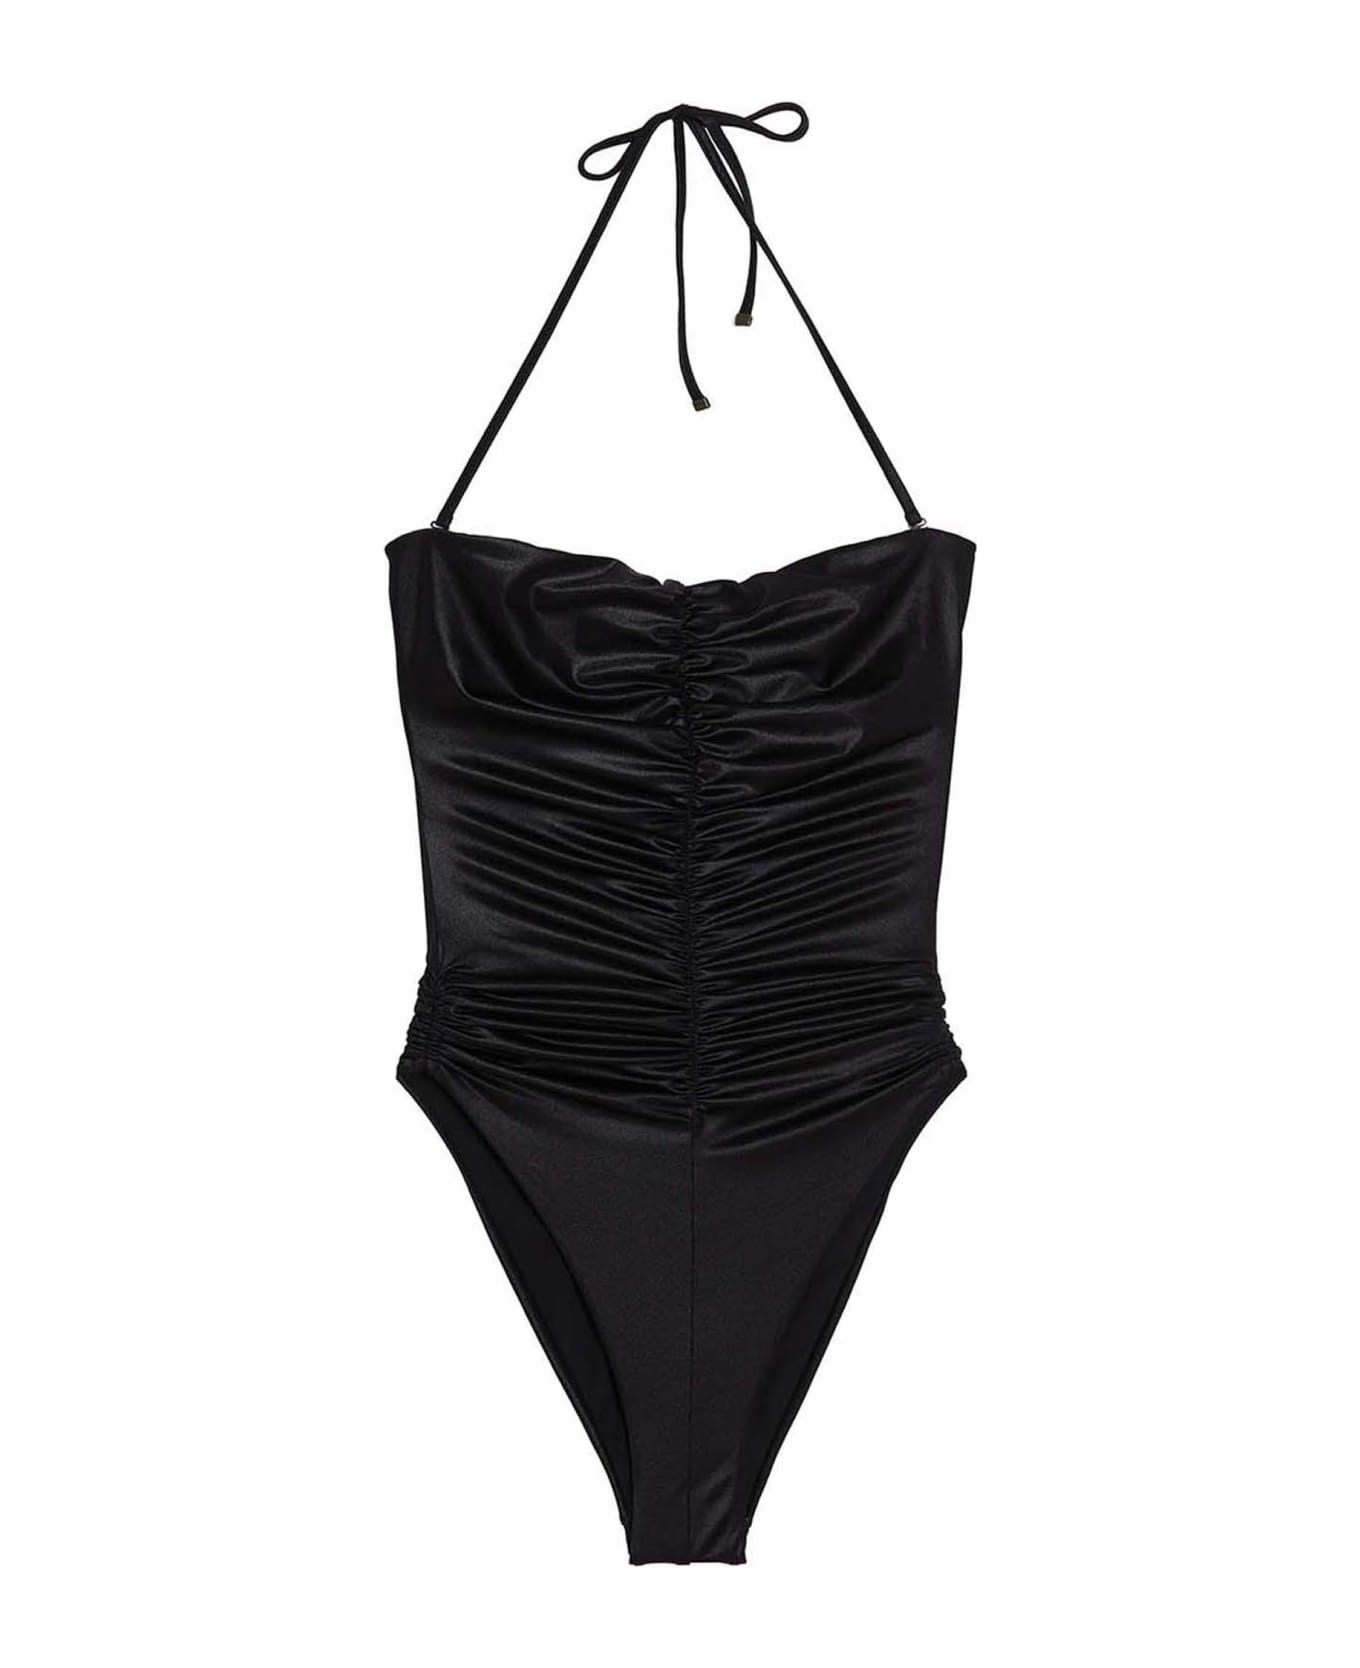 Saint Laurent Swimsuit - Black